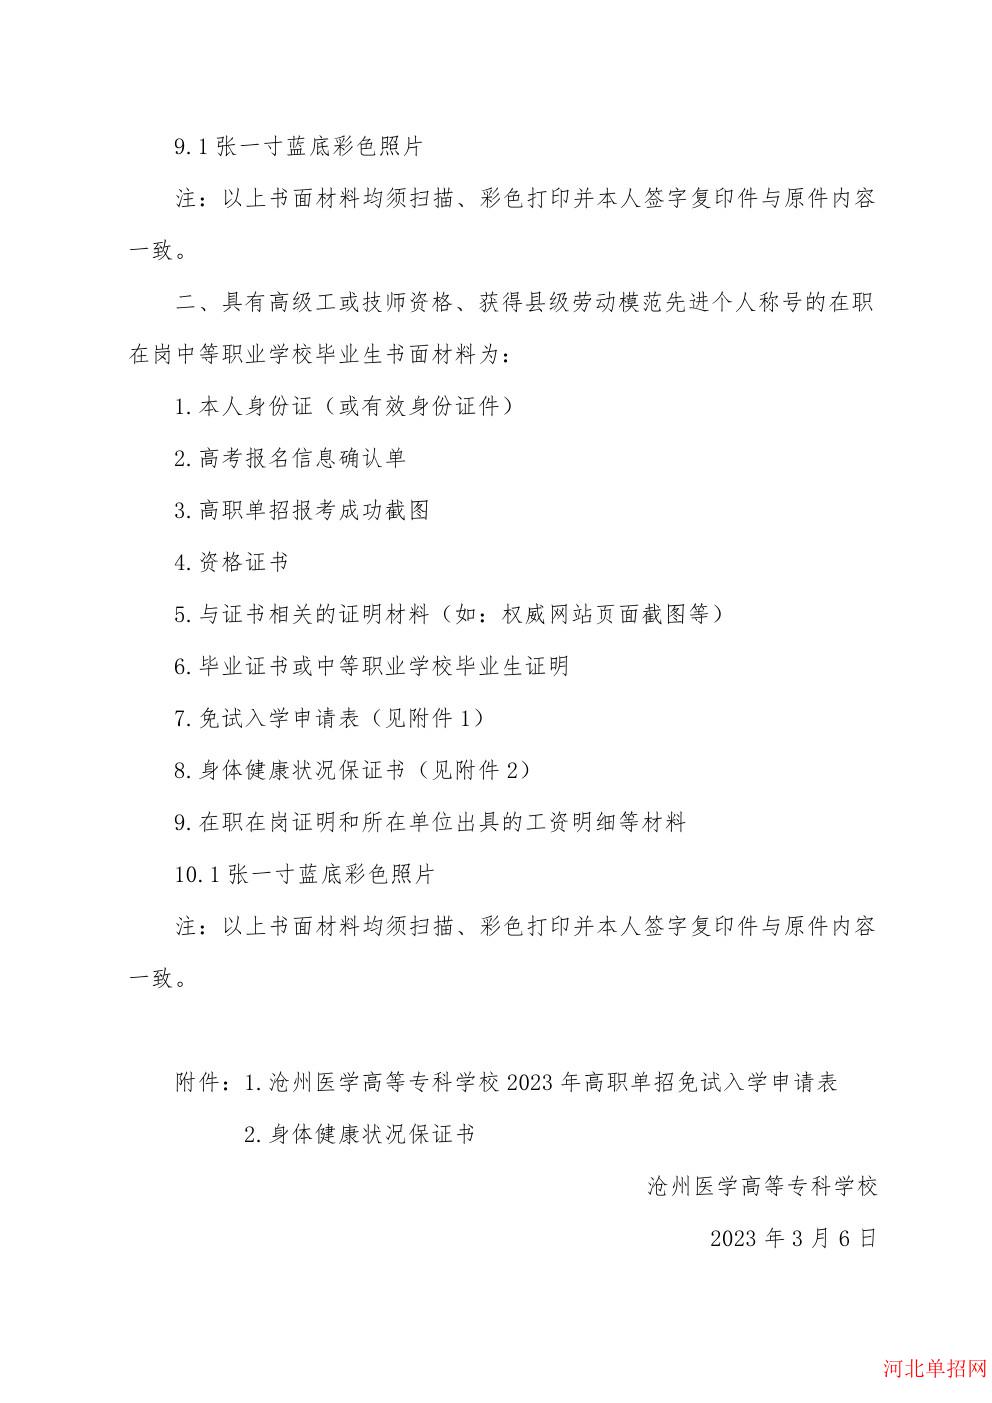 沧州医学高等专科学校2023年高职单招申请免试考生须知 图2